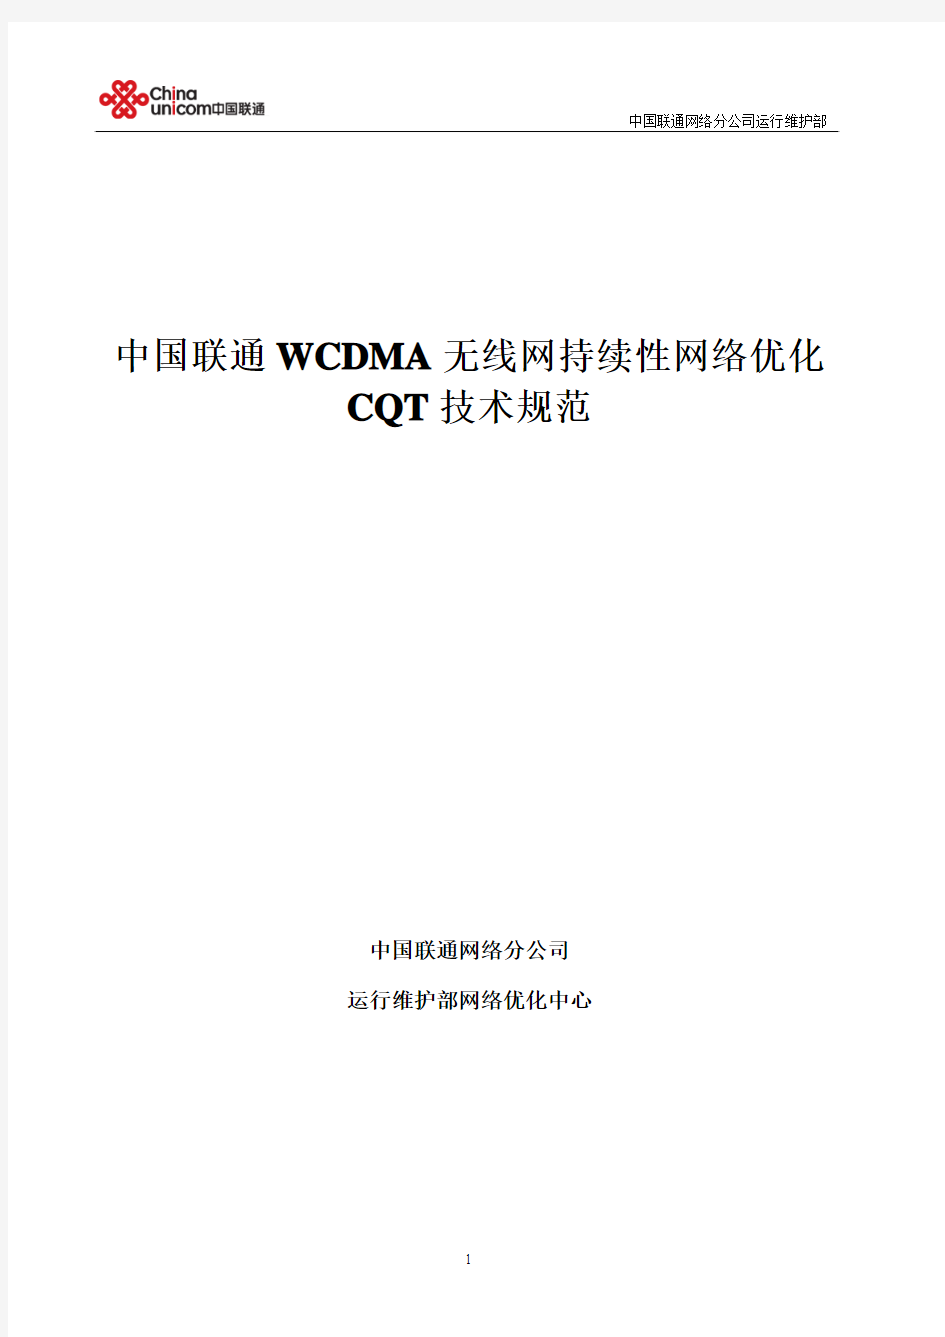 中国联通WCDMA无线网持续性网络优化CQT技术规范